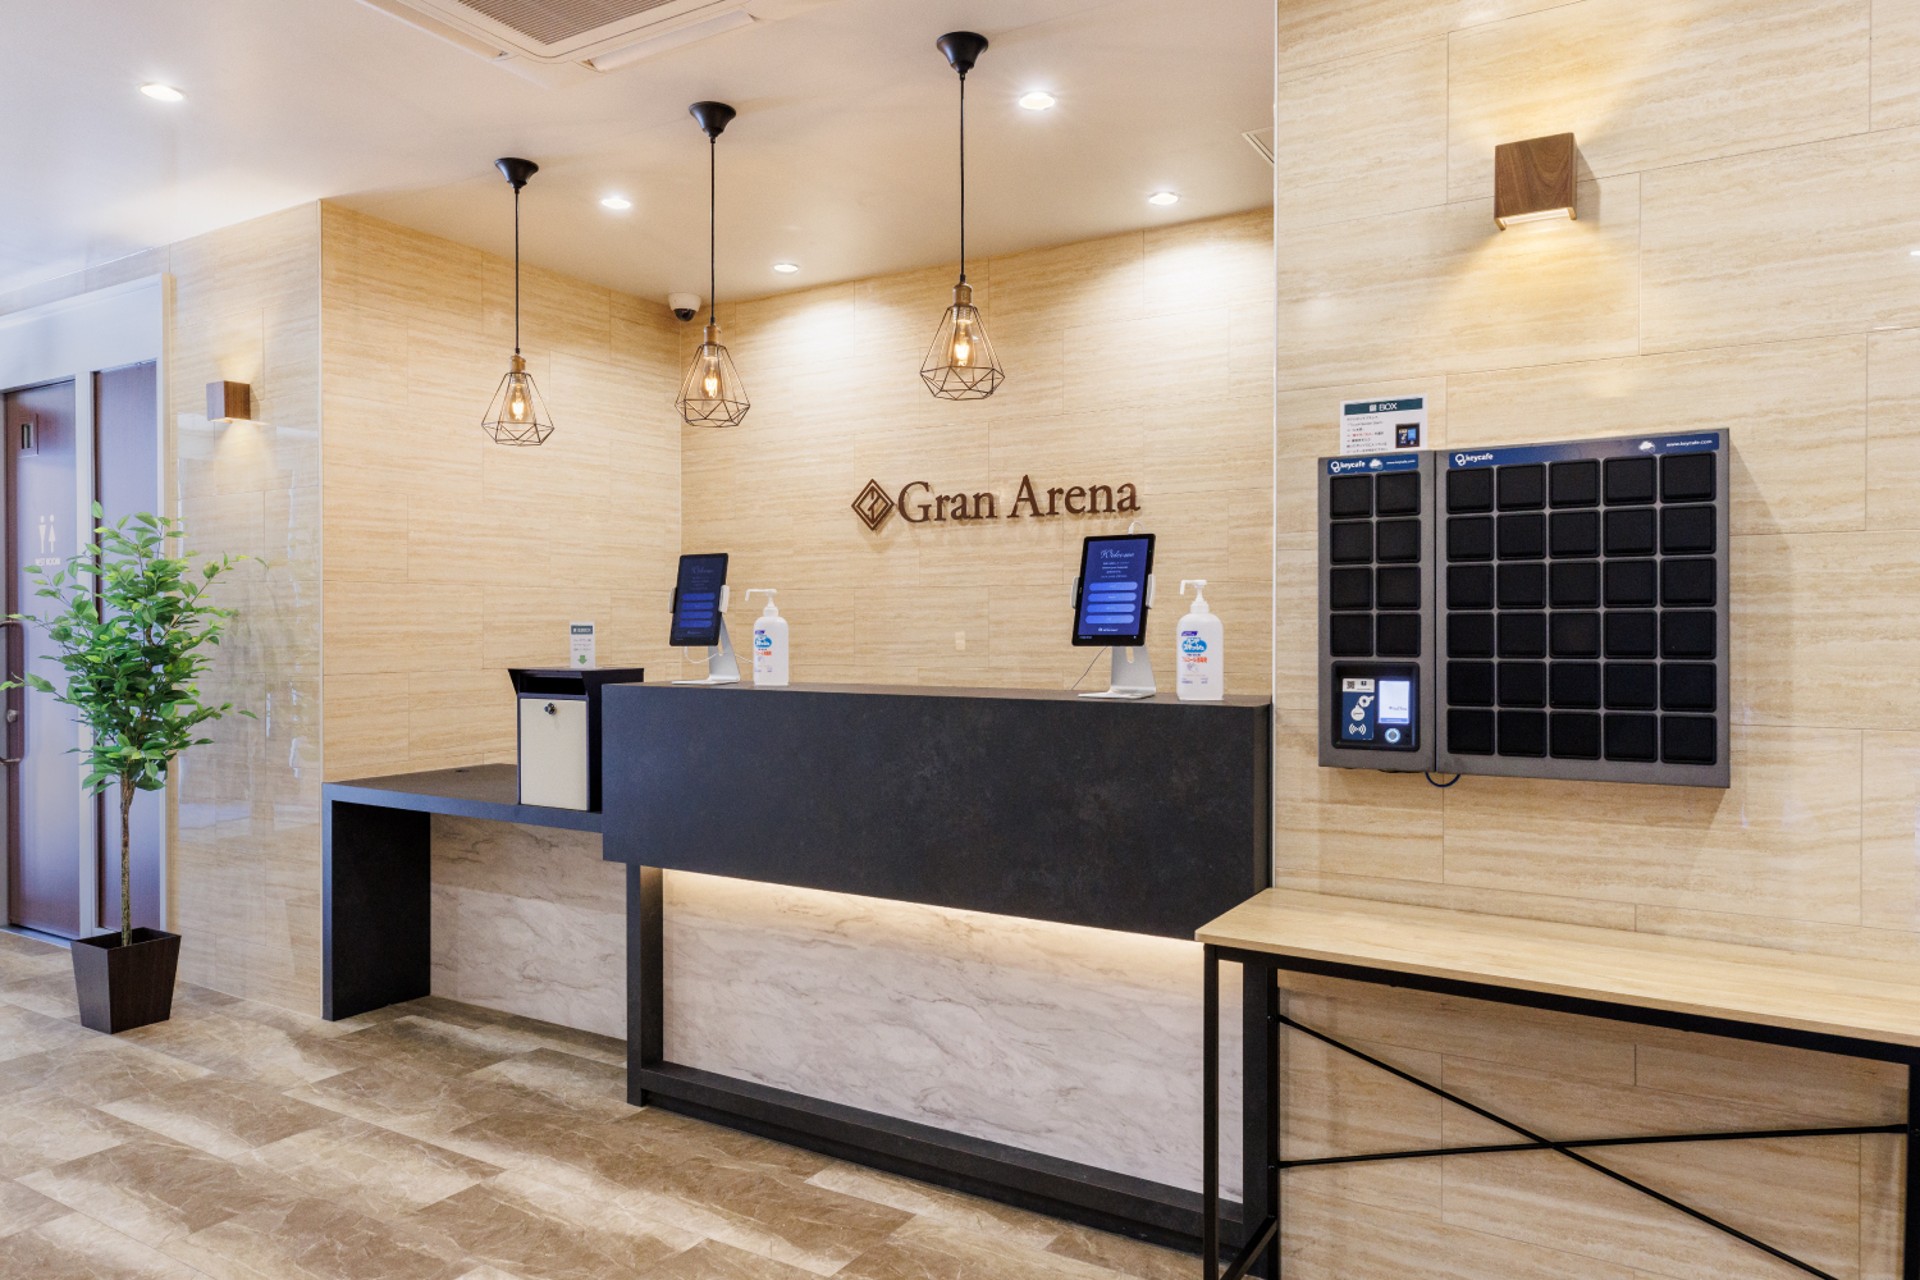 Hotel Gran Arena verlaagt kosten en verhoogt gasttevredenheid met Keycafe